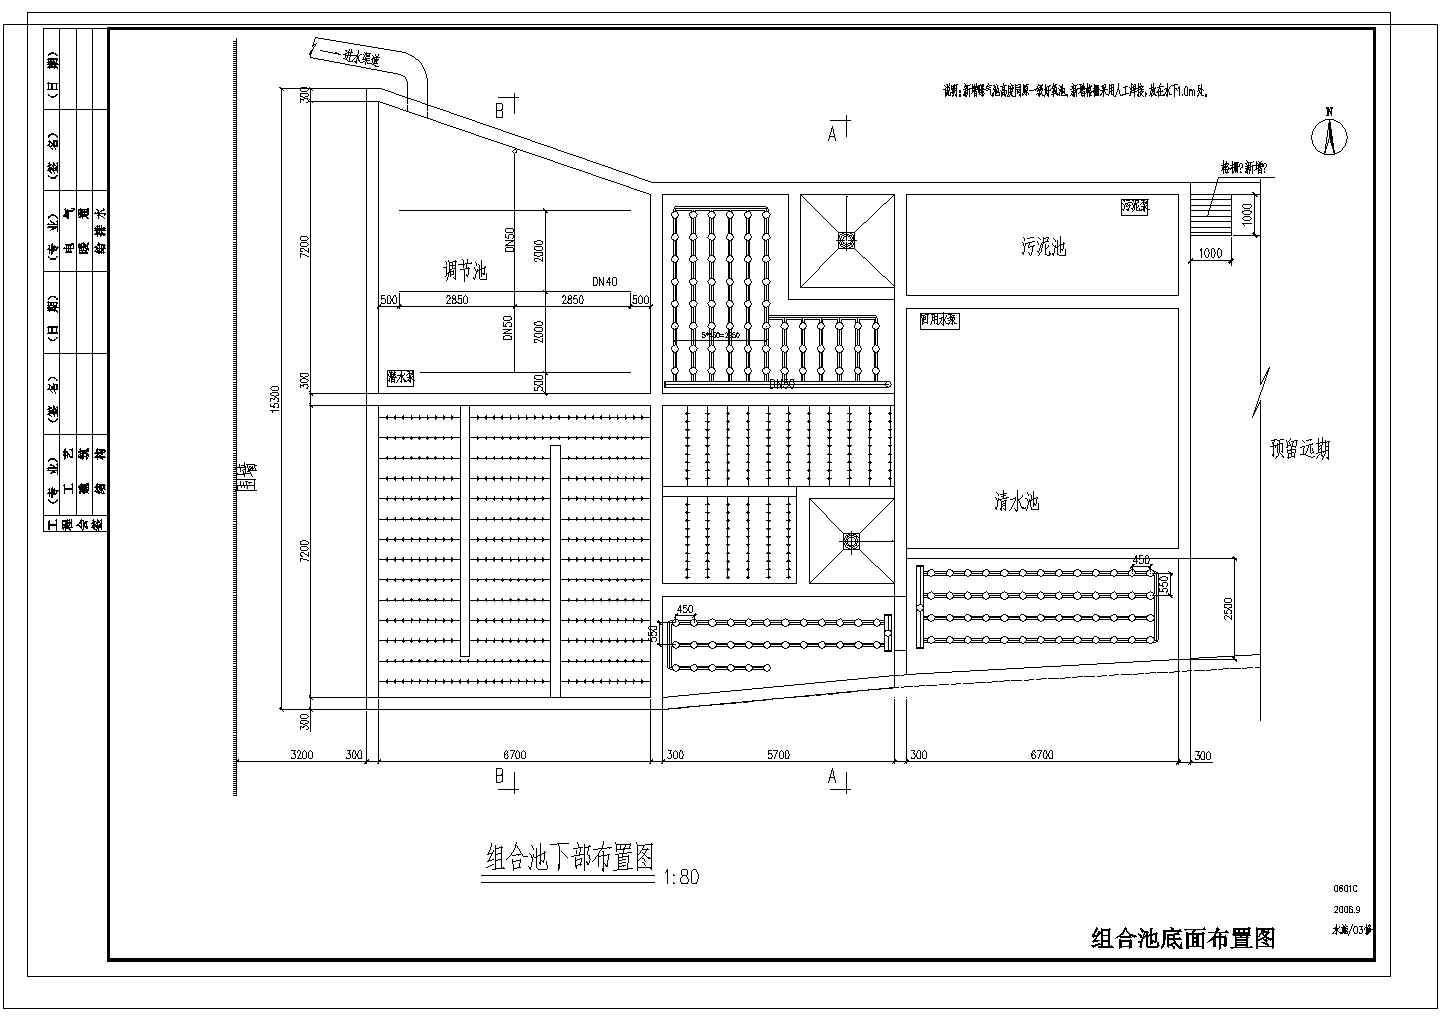 上海某公司污水改造项目工艺图CAD设计节点图